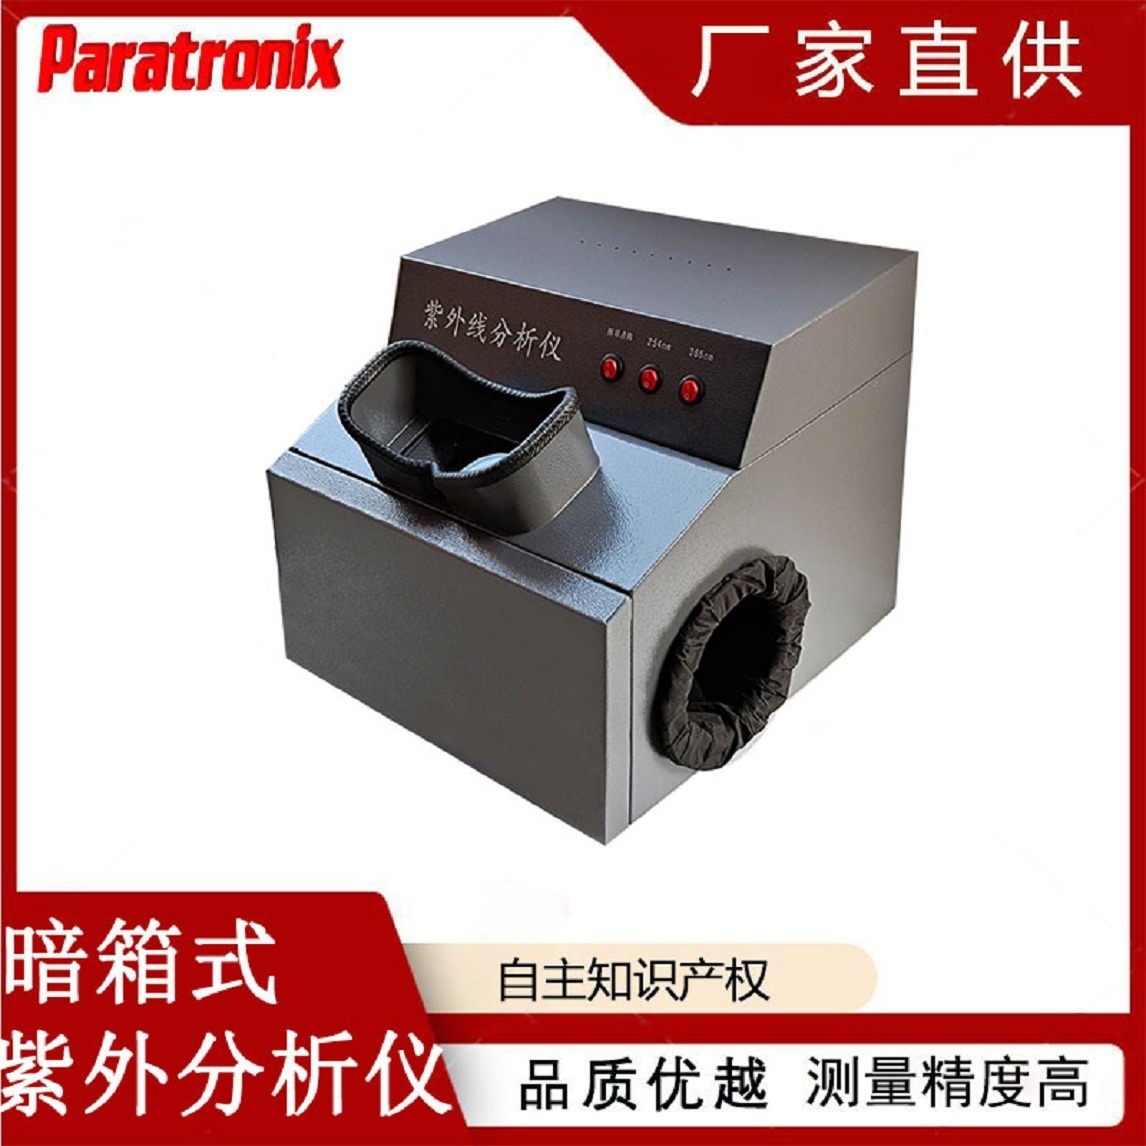 普创科技Paratronix 纸层分析斑点仪 暗箱式紫外分析仪UAT-02